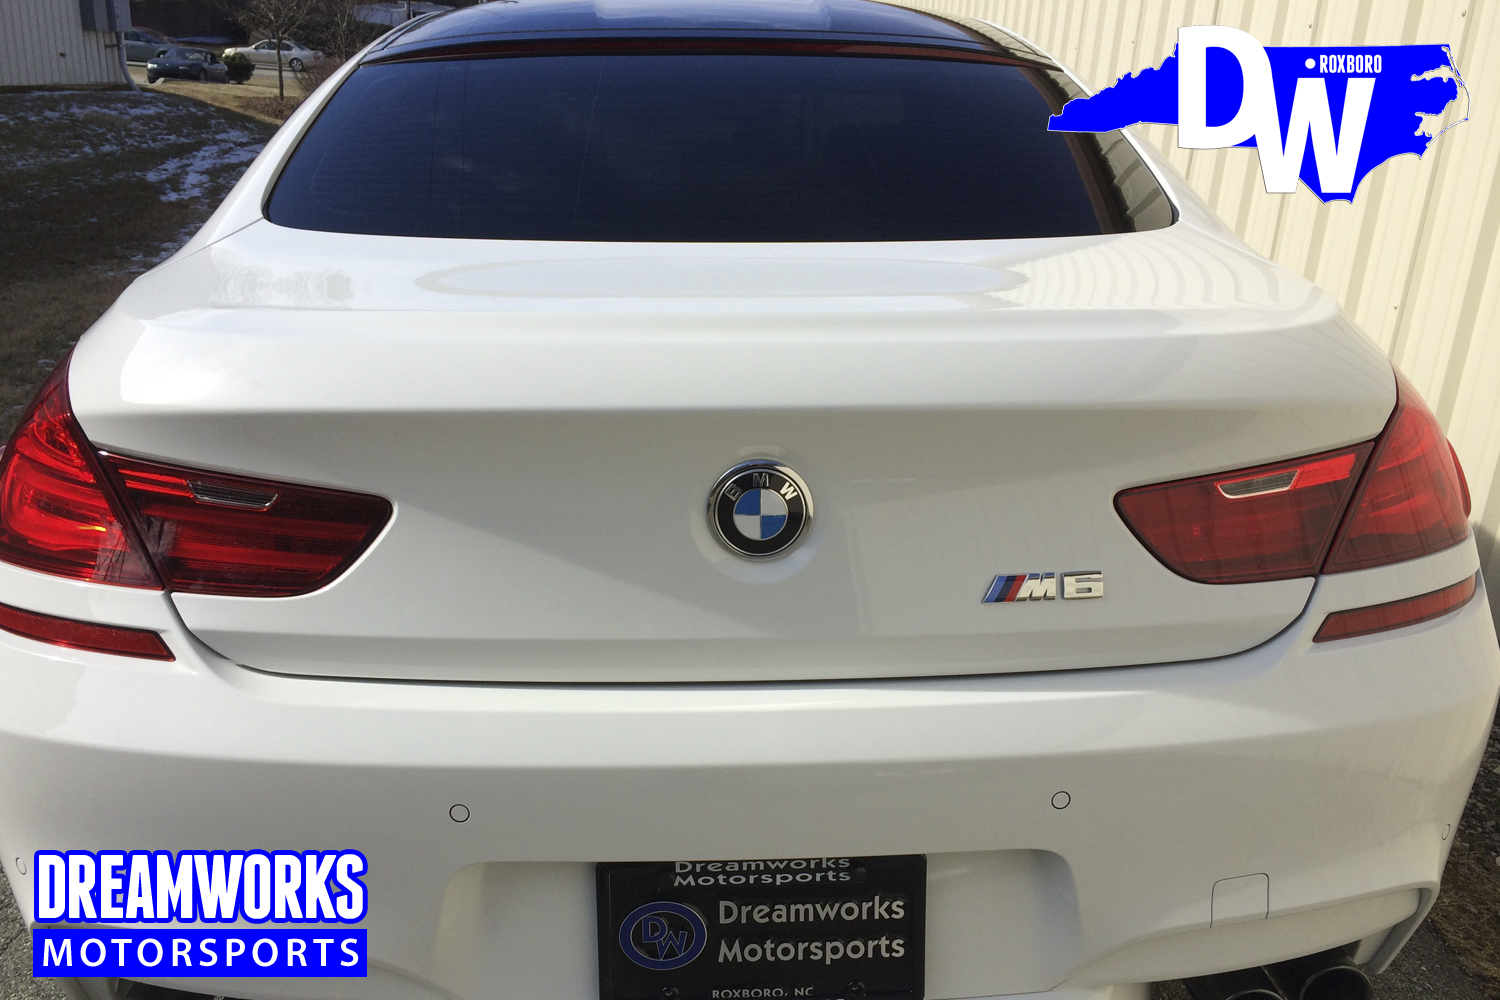 Chris-Wilcox-BMW-By-Dreamworks-Motorsports-4.jpg